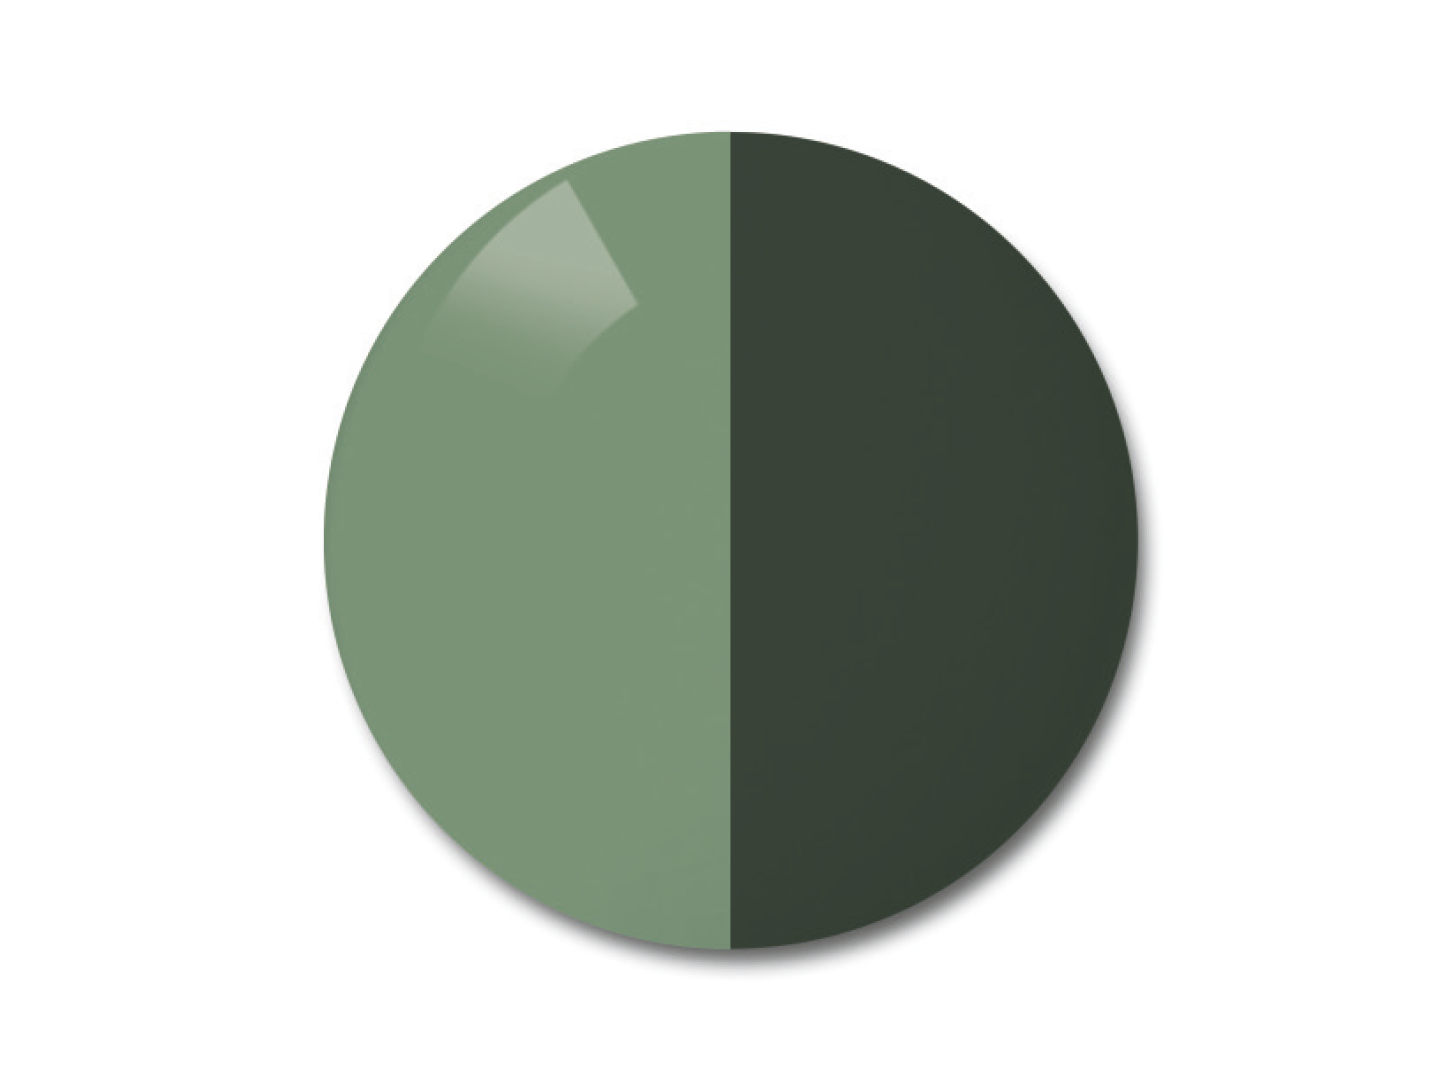 자이스 어댑티브선 변색 렌즈 중 단색 파이오니아 색상을 보여주는 이미지 